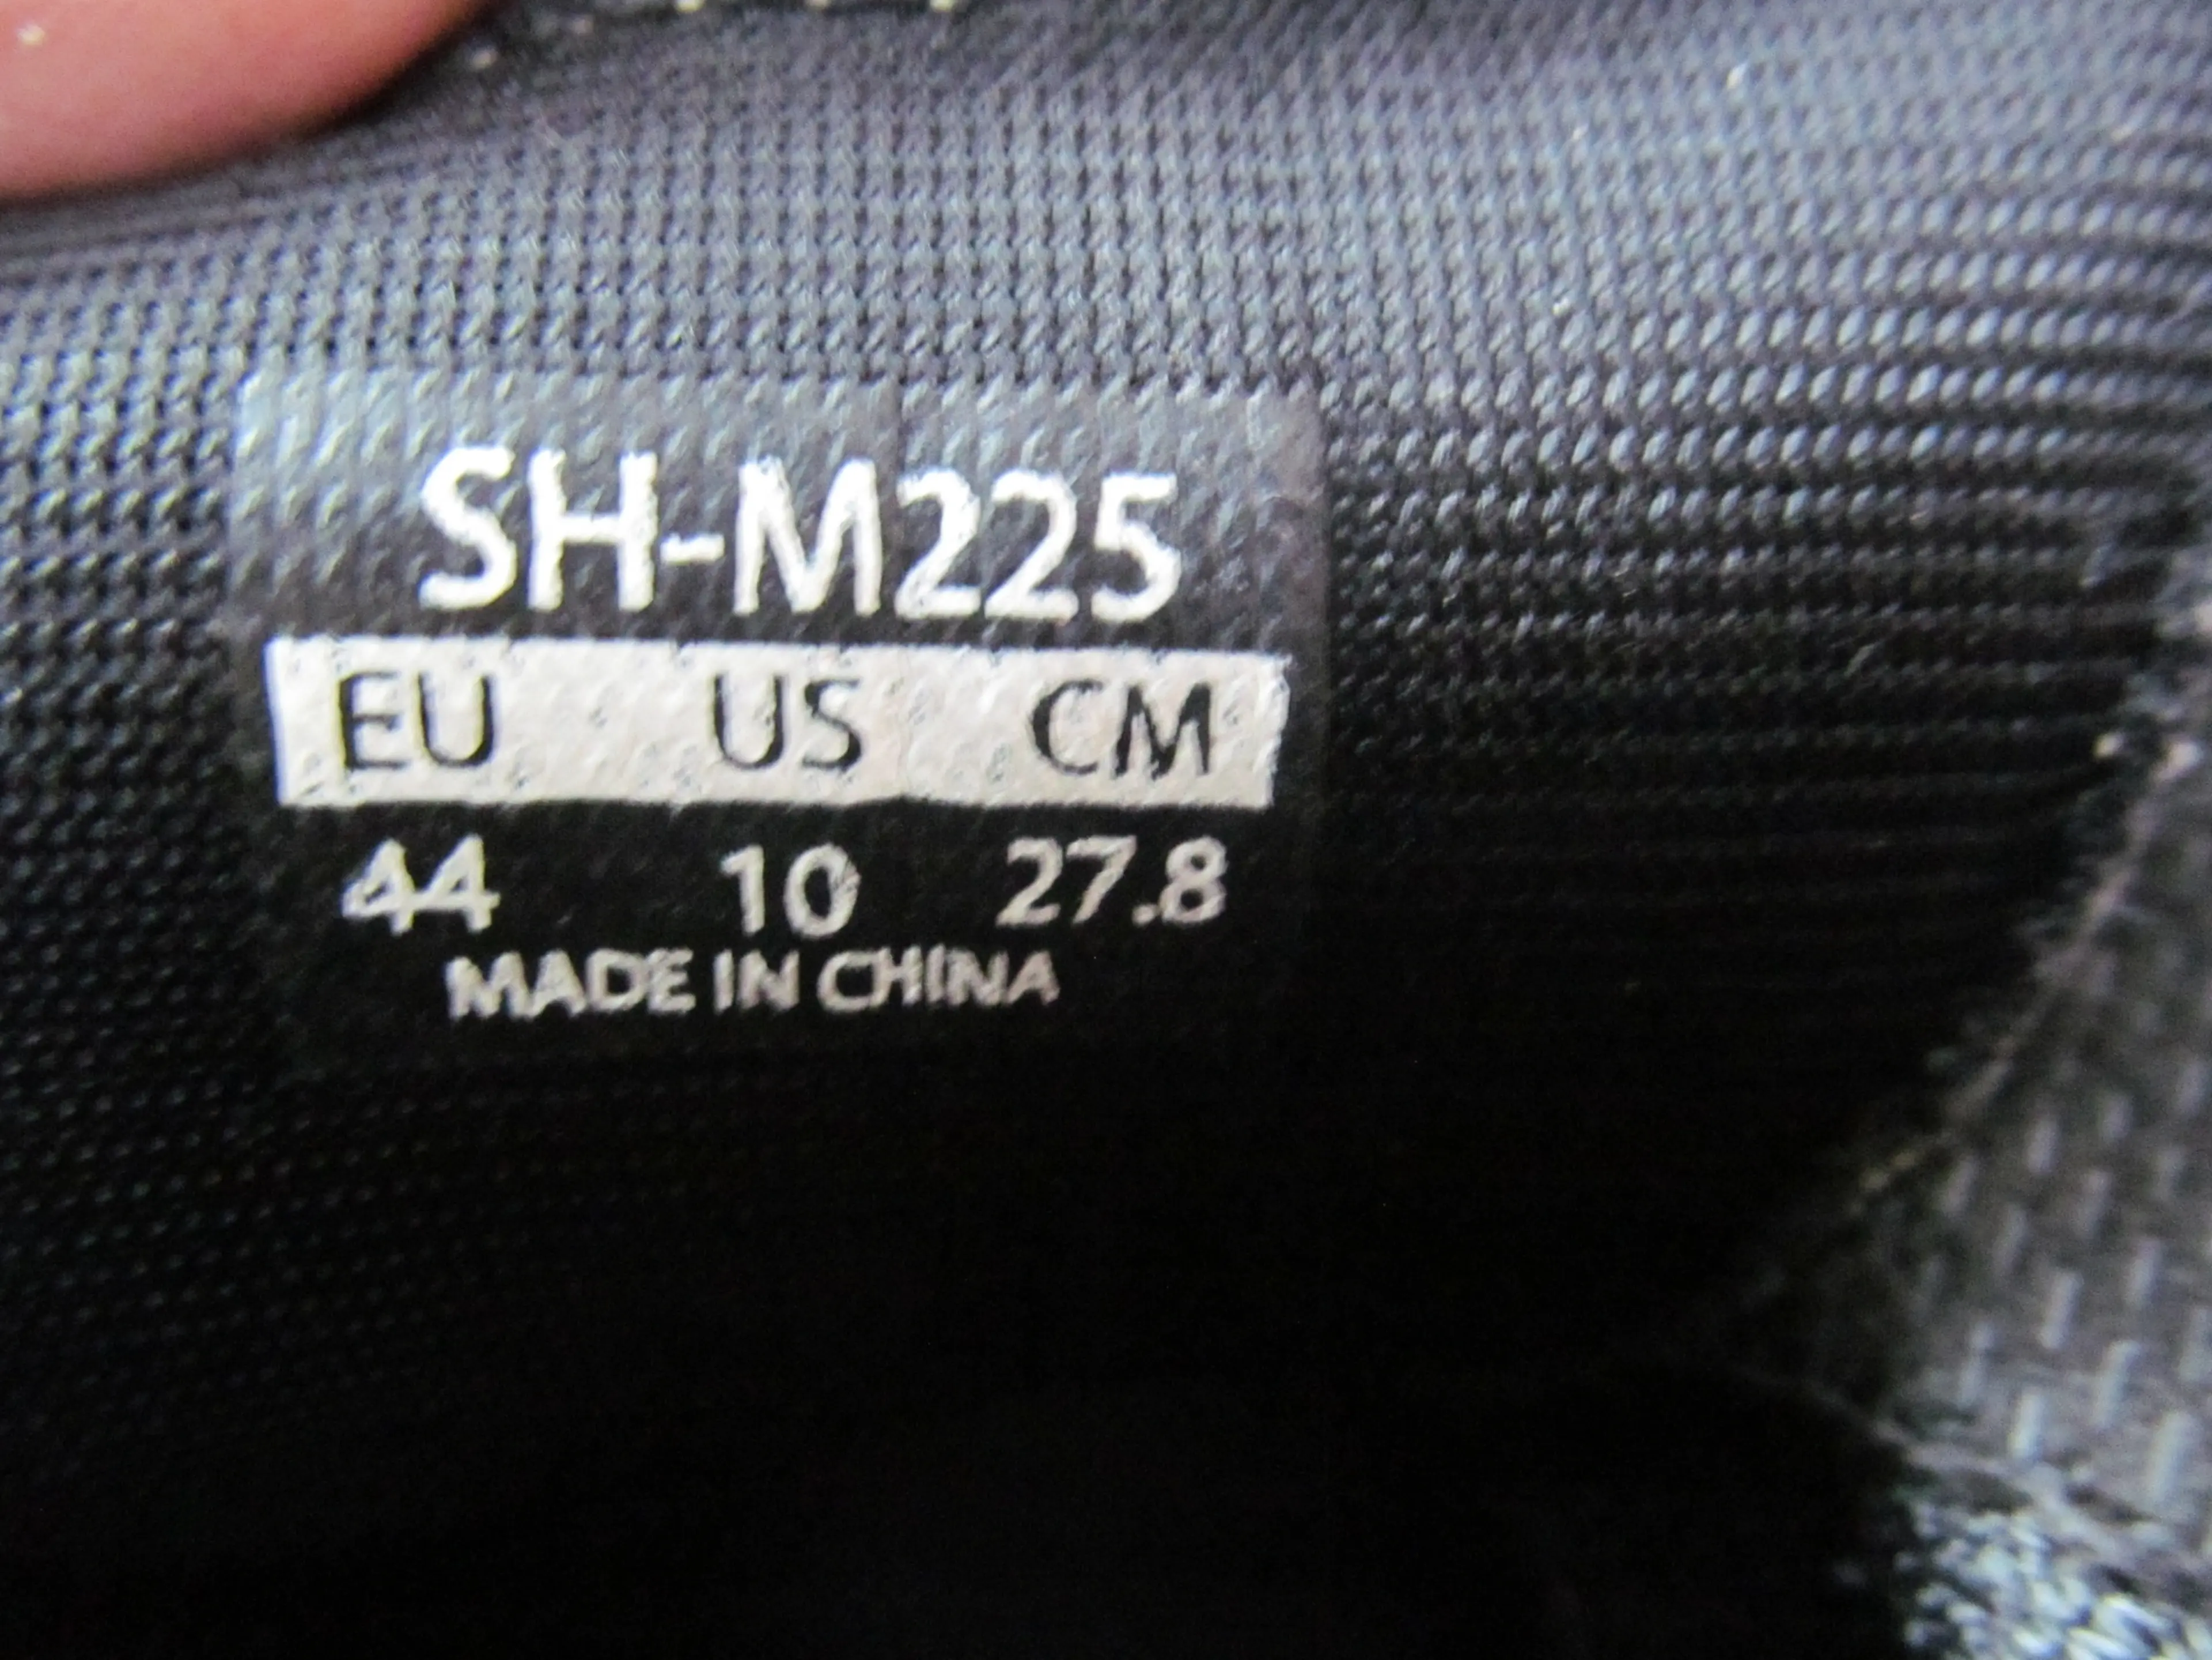 3. Pantofi Shimano SH-M225 nr.44, 27.8 cm